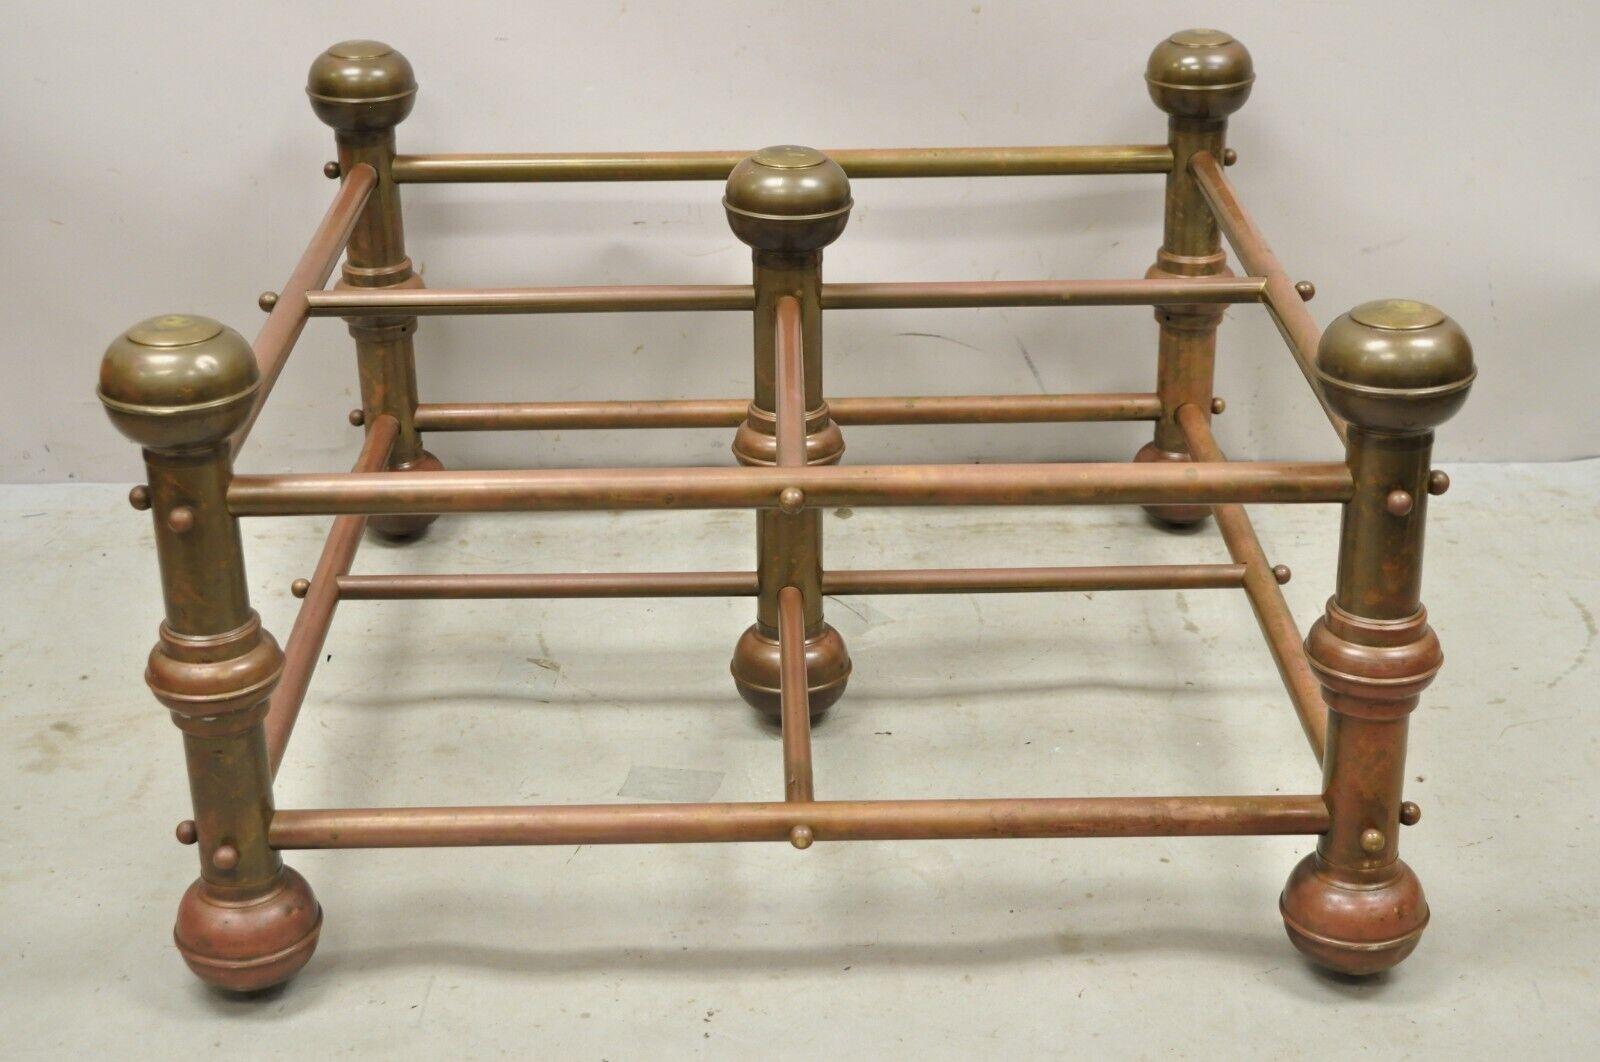 Base de table basse carrée en laiton tourné, style lit, de l'époque victorienne. Circa 19ème siècle. Dimensions : 18